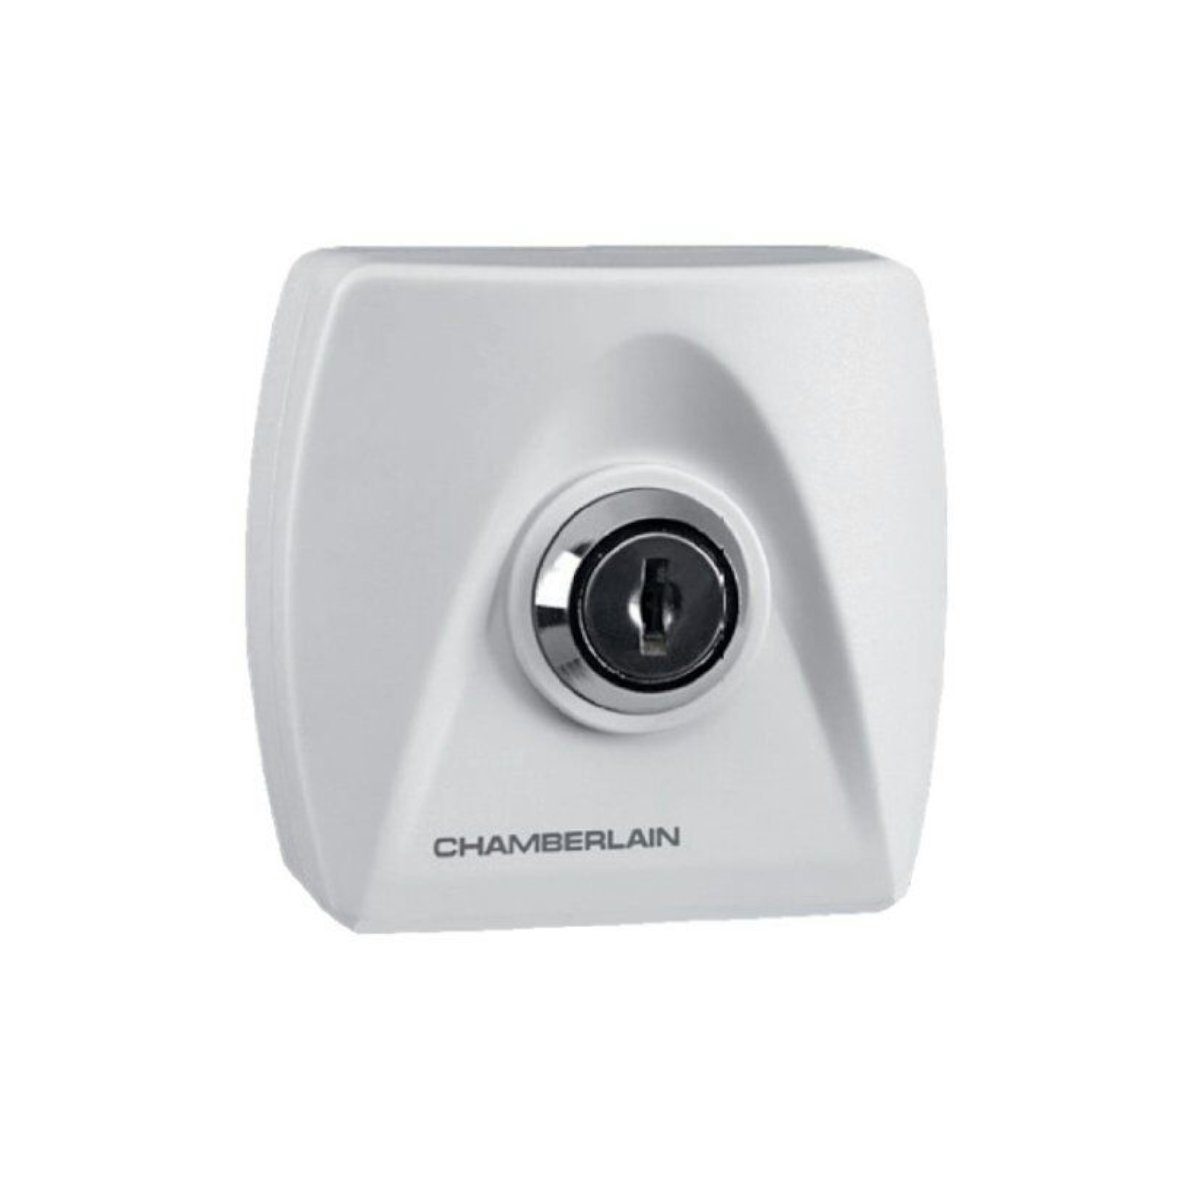 Chamberlain Schalter Schlüsselschalter für Garagentorantriebe inkl zwei Schlüssel Aufputz, Weiß, einfache Montage, 50 mm Durchmesser, IP54-Schutz, Aufputz